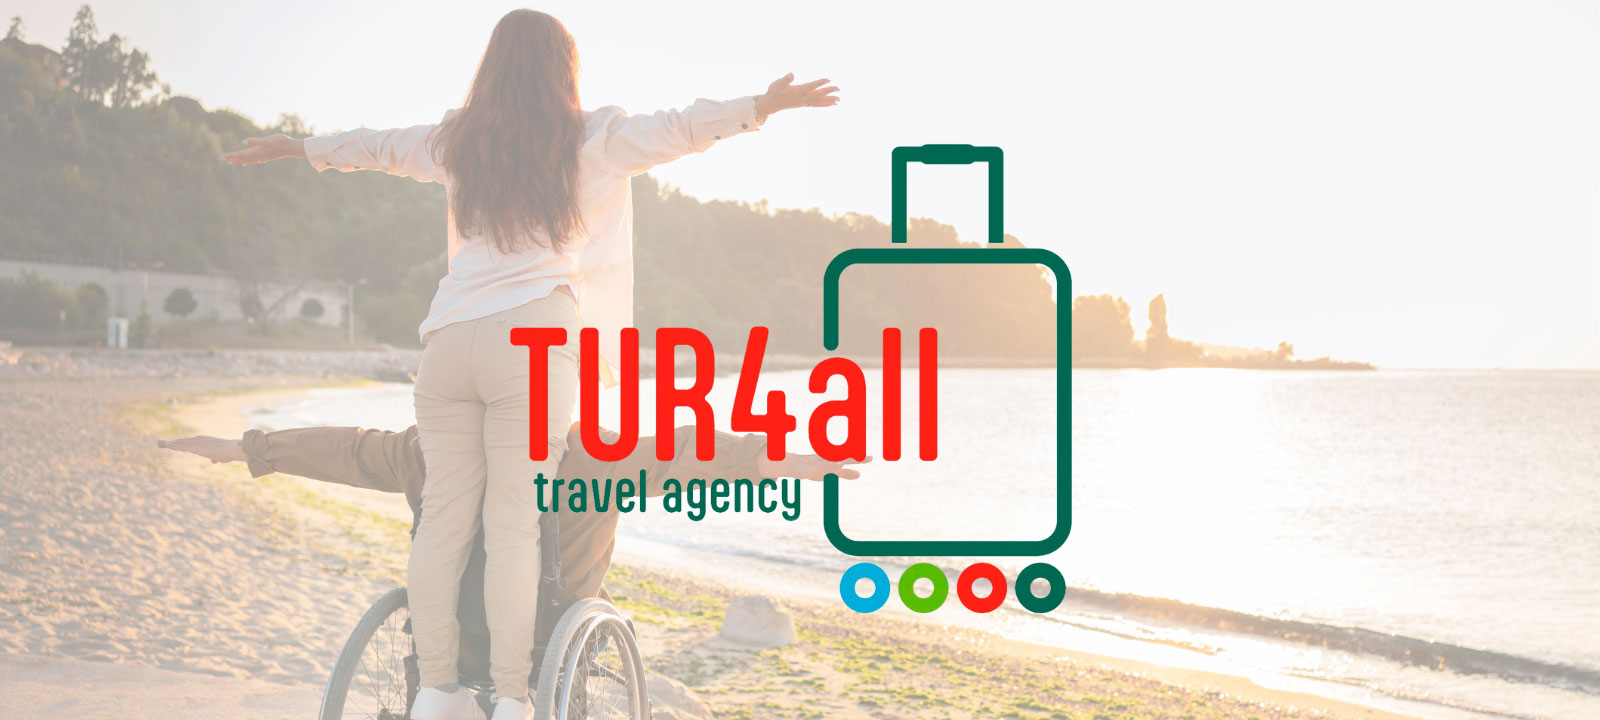 imagen de la noticia - PREDIF da el paso definitivo en su compromiso con el turismo accesible con su propia agencia de viajes